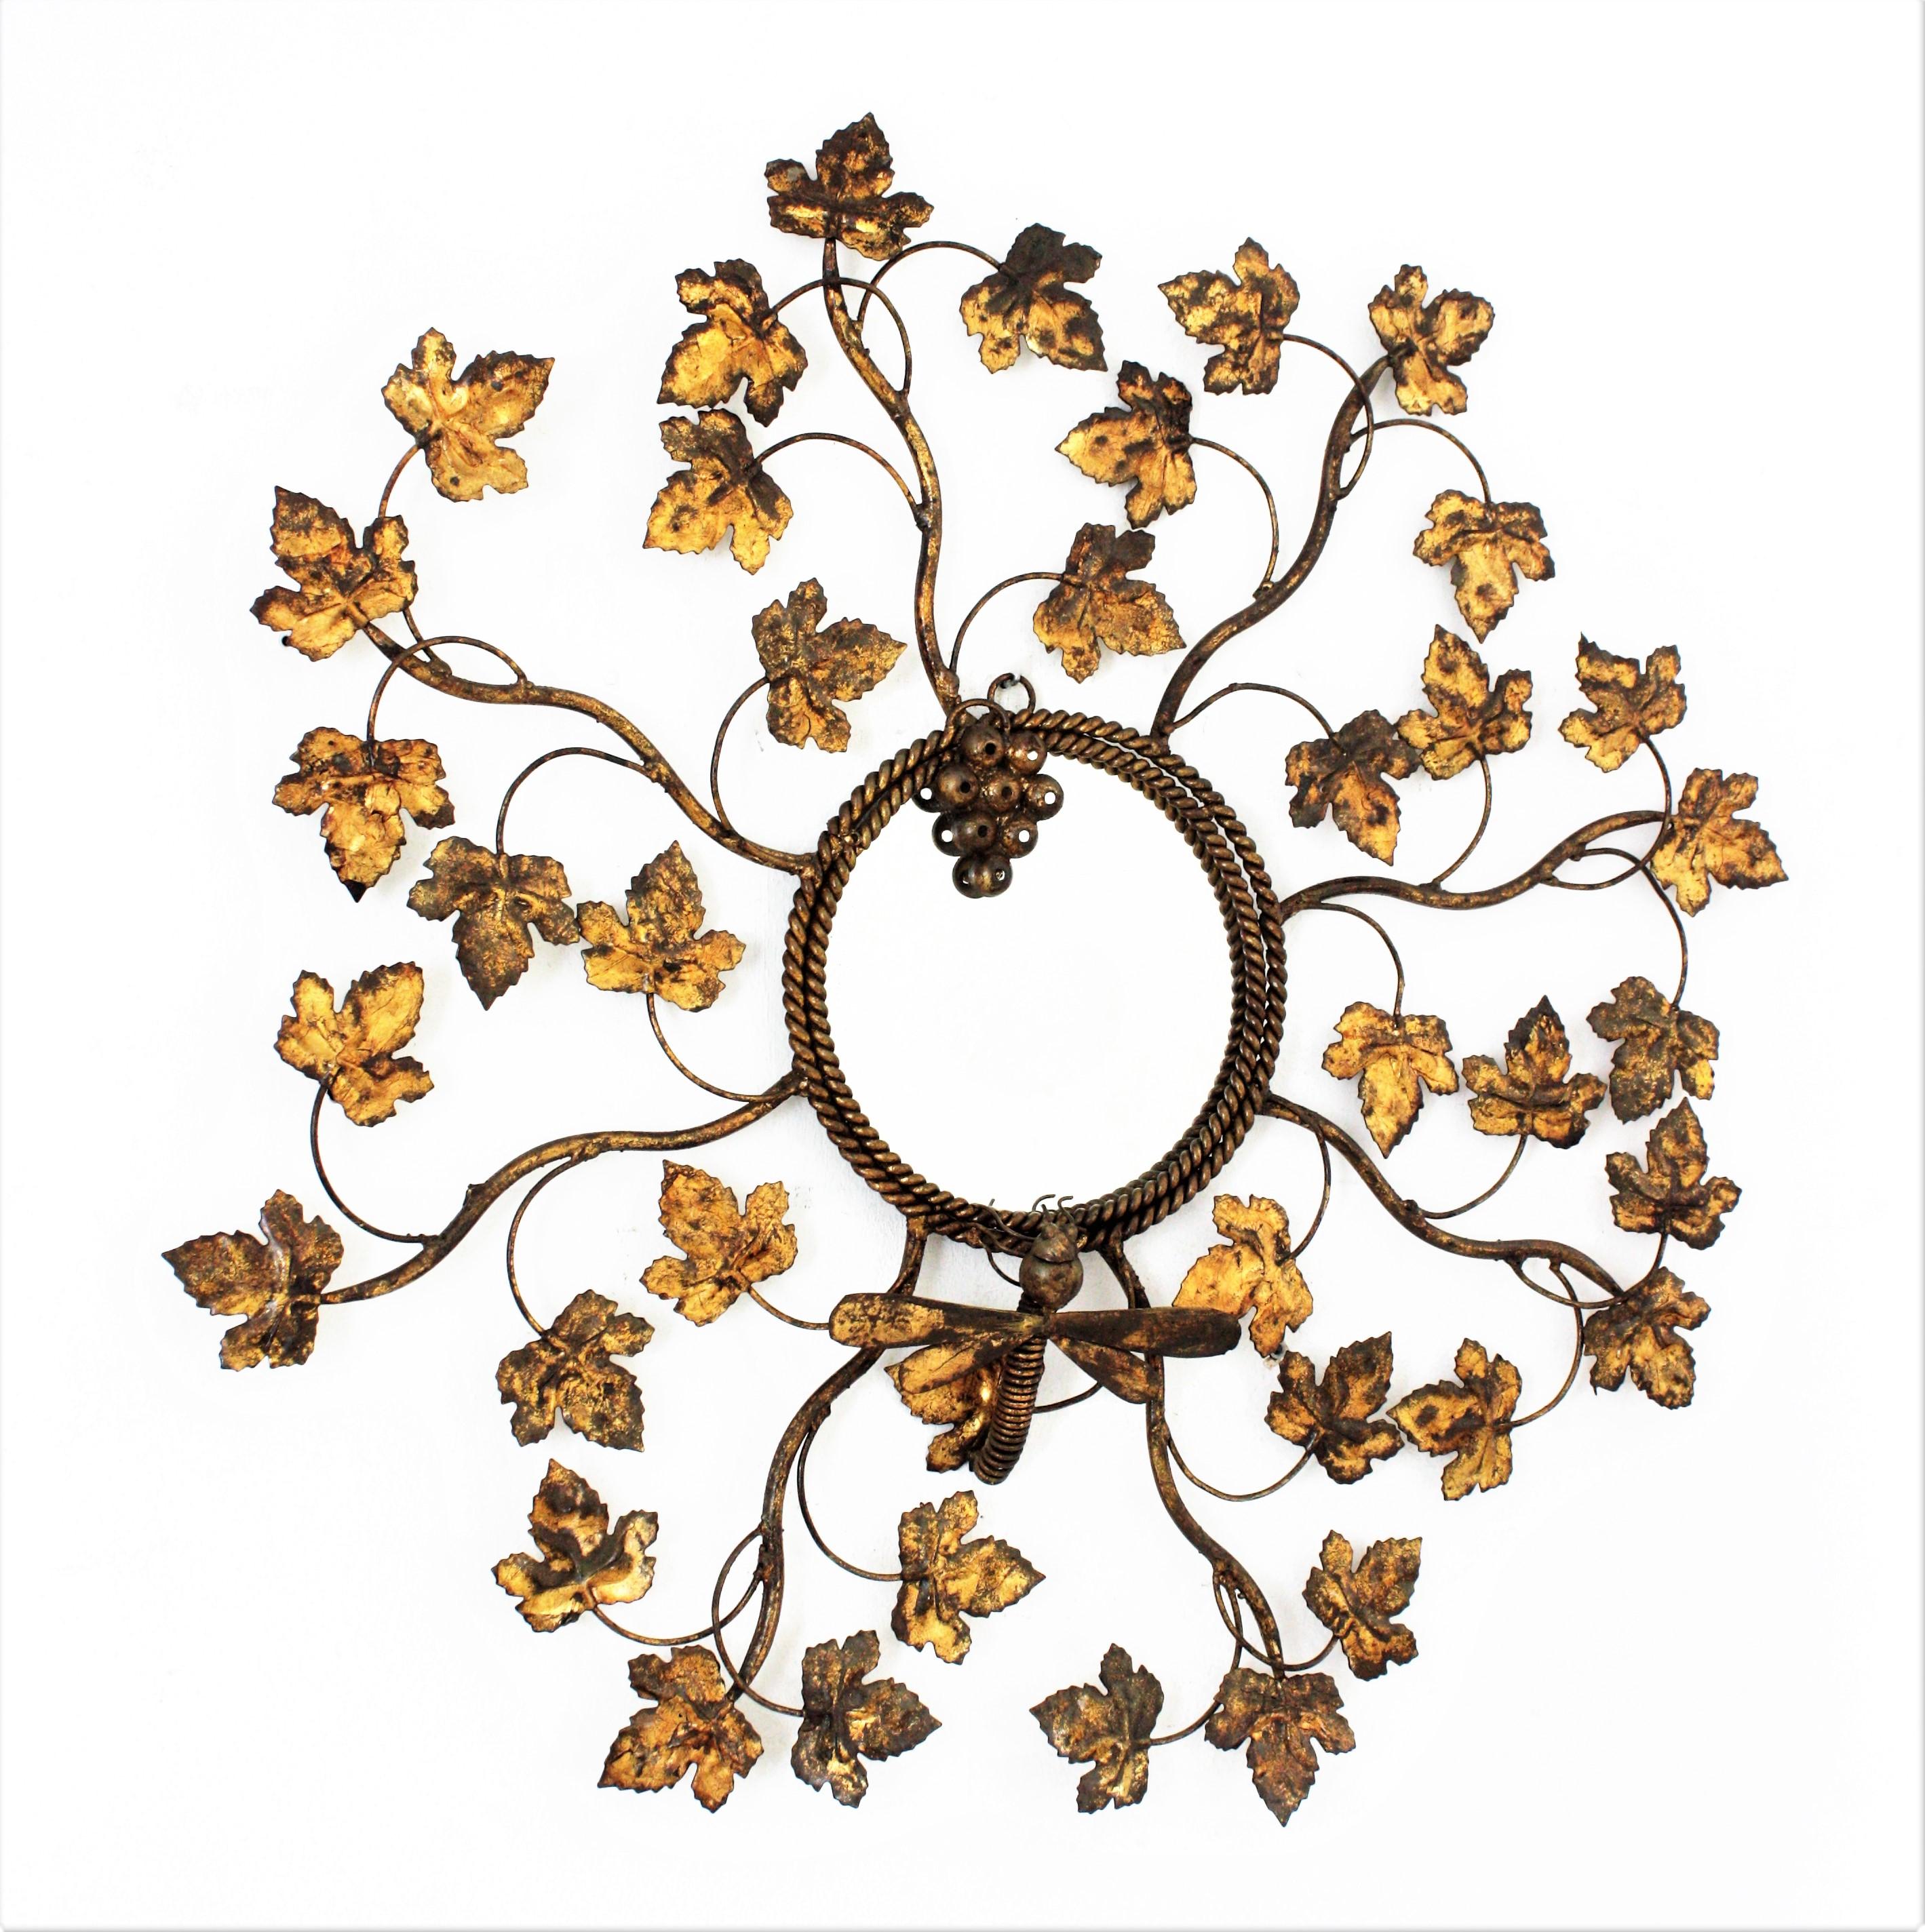 Miroir soleil Naturalistic Design, métal doré, feuille d'or, France, années 1950.
Miroir ensoleillé unique en son genre, dont le cadre est constitué de branches et de feuilles de vigne ornées d'une grappe de raisin et d'une libellule.
Ce miroir a